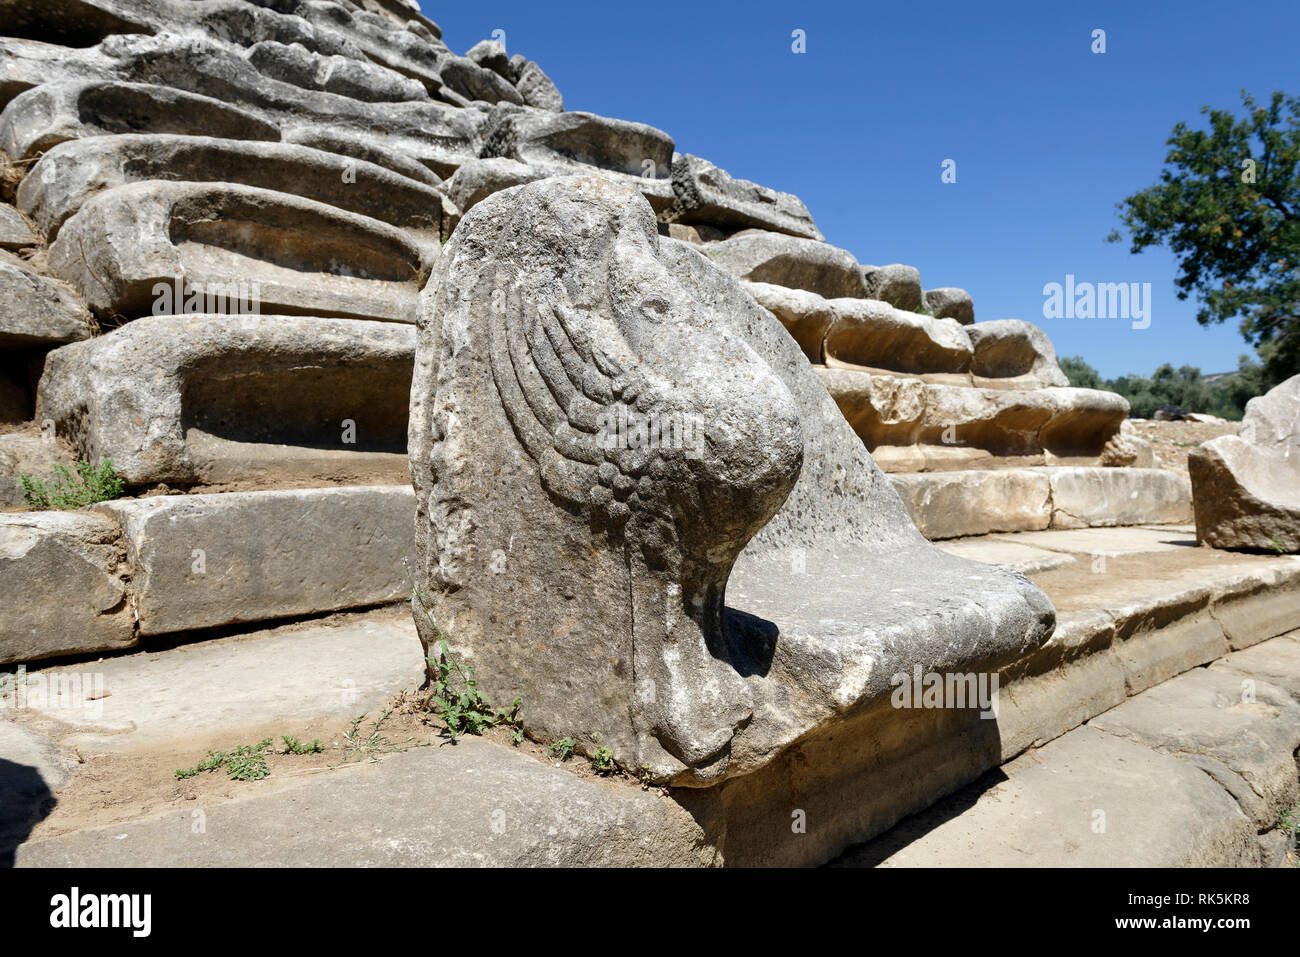 Esempio ornati di una Proedria - trono-simili posti nelle prime file del Teatro ellenistico, antica Stratonicea, Eskihisar, Turchia. Costruito su una natu Foto Stock